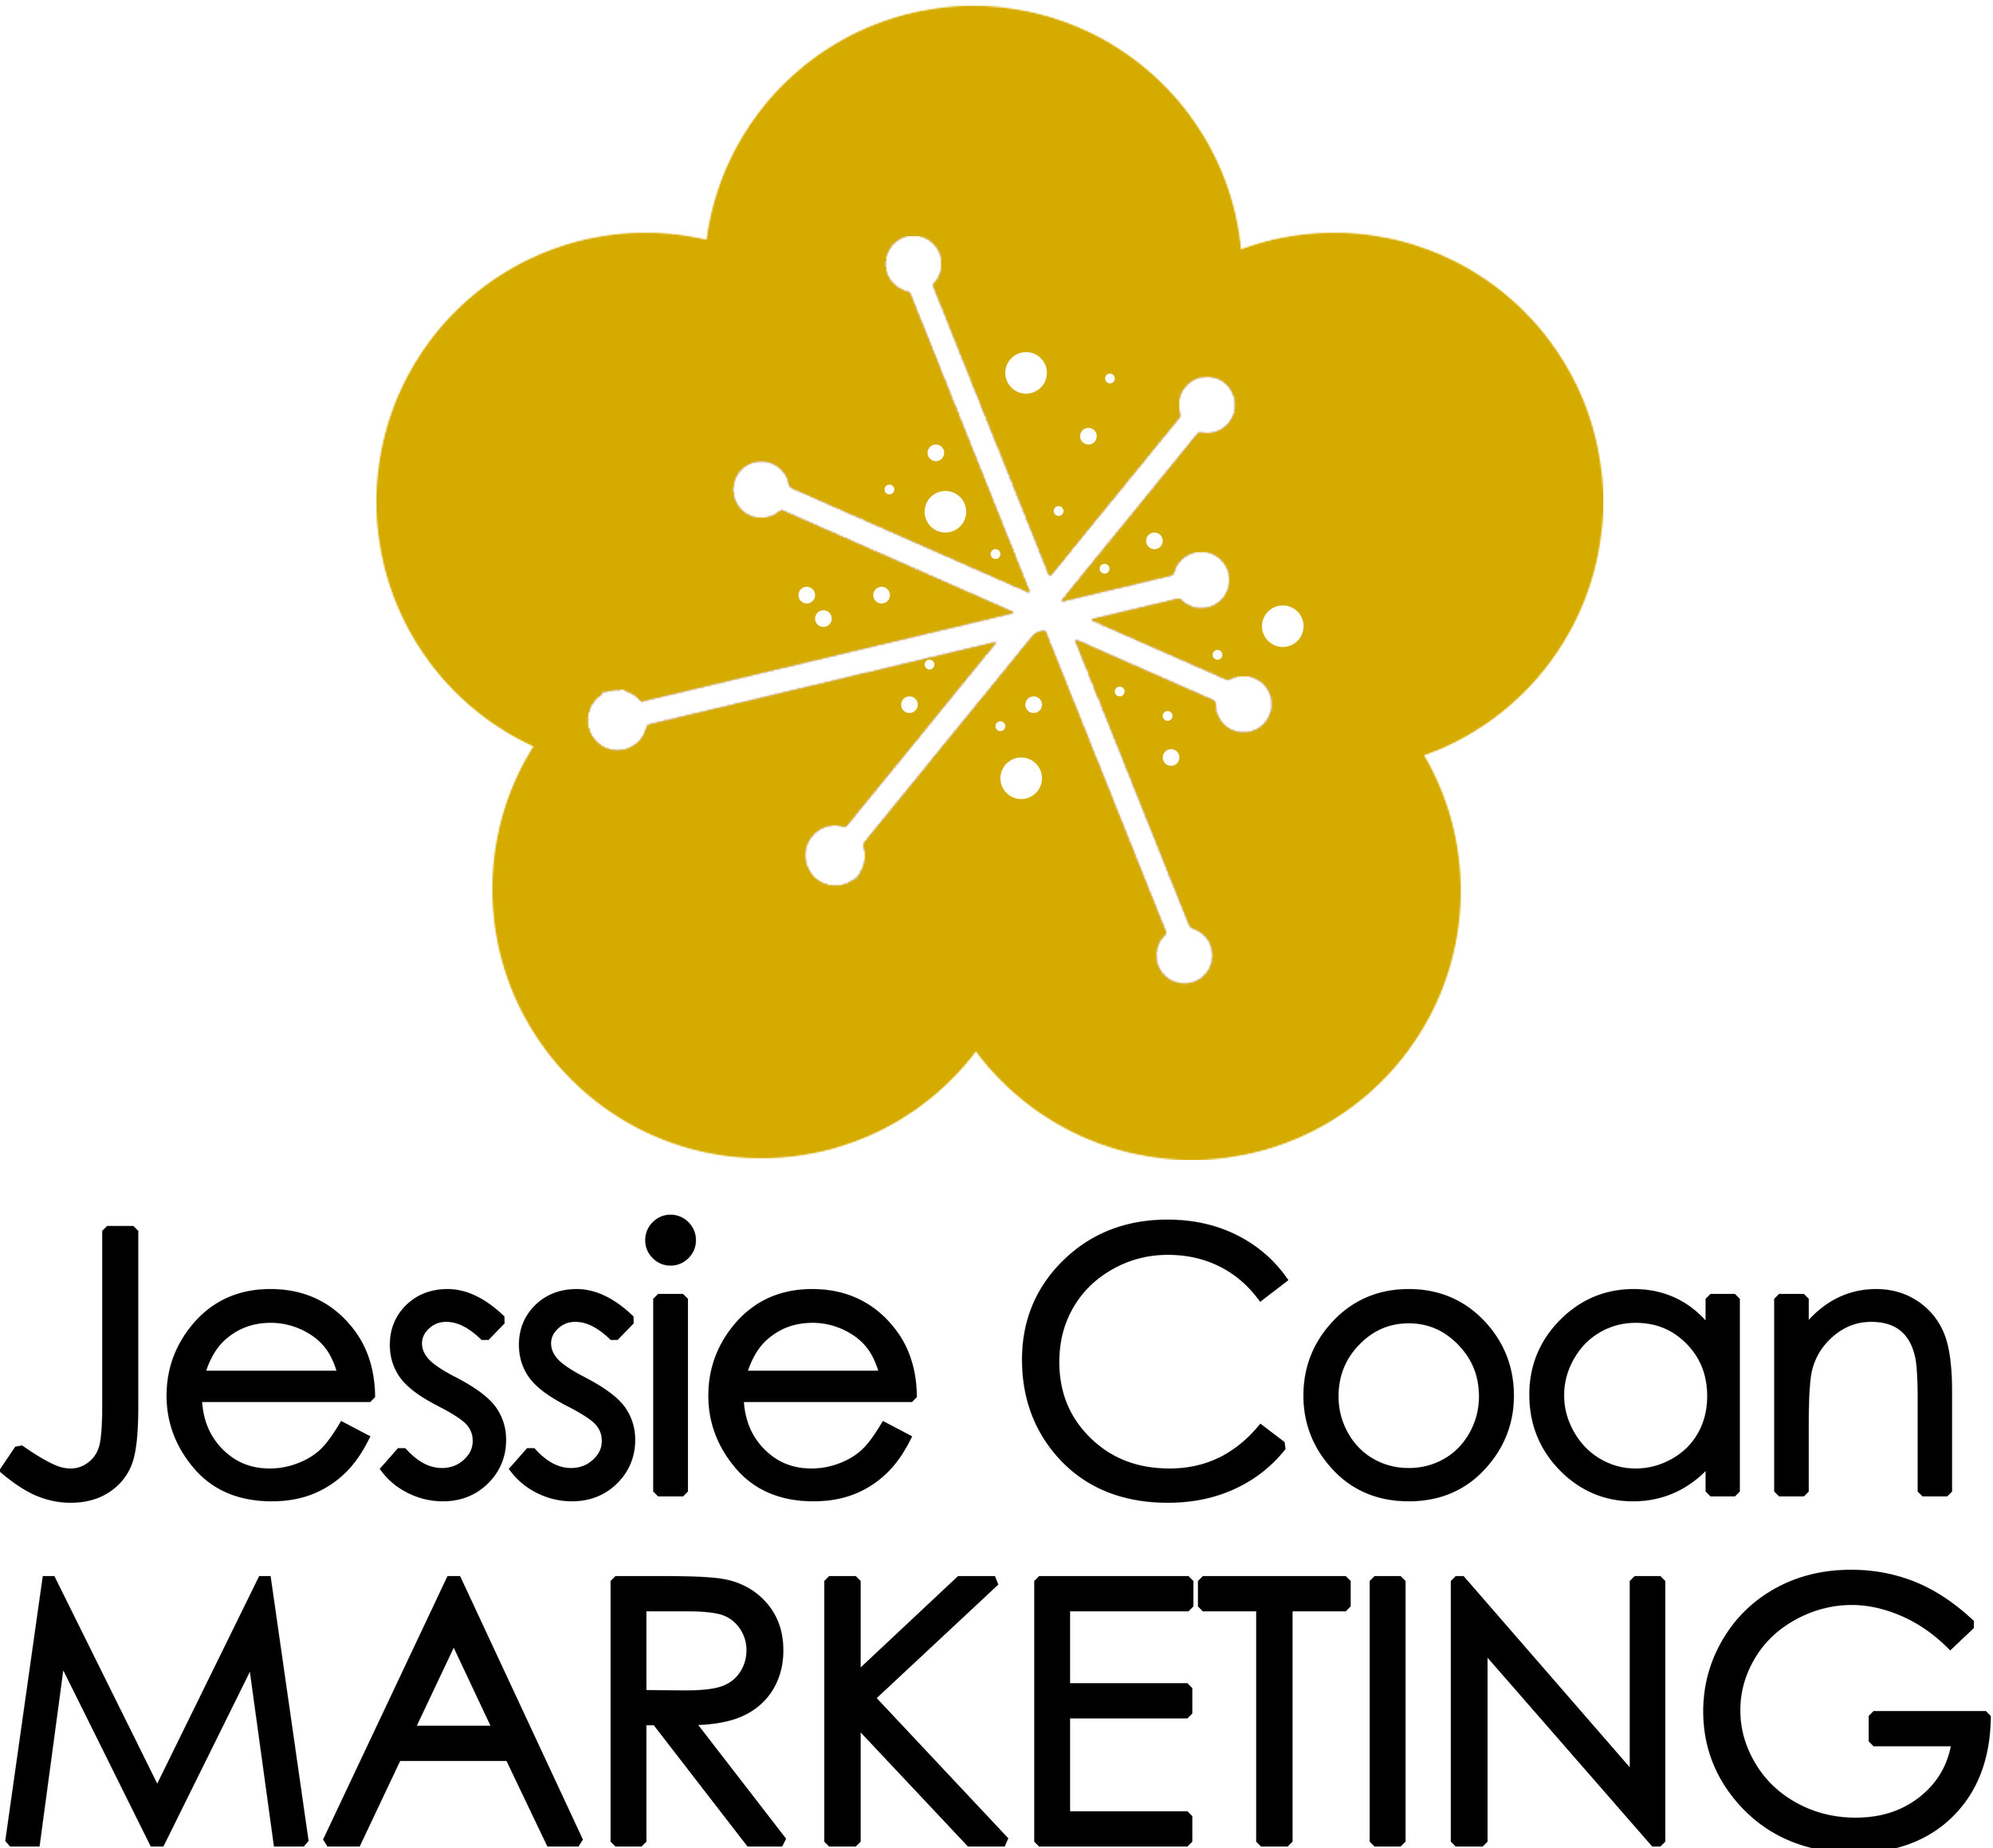 Jessie Coan Marketing